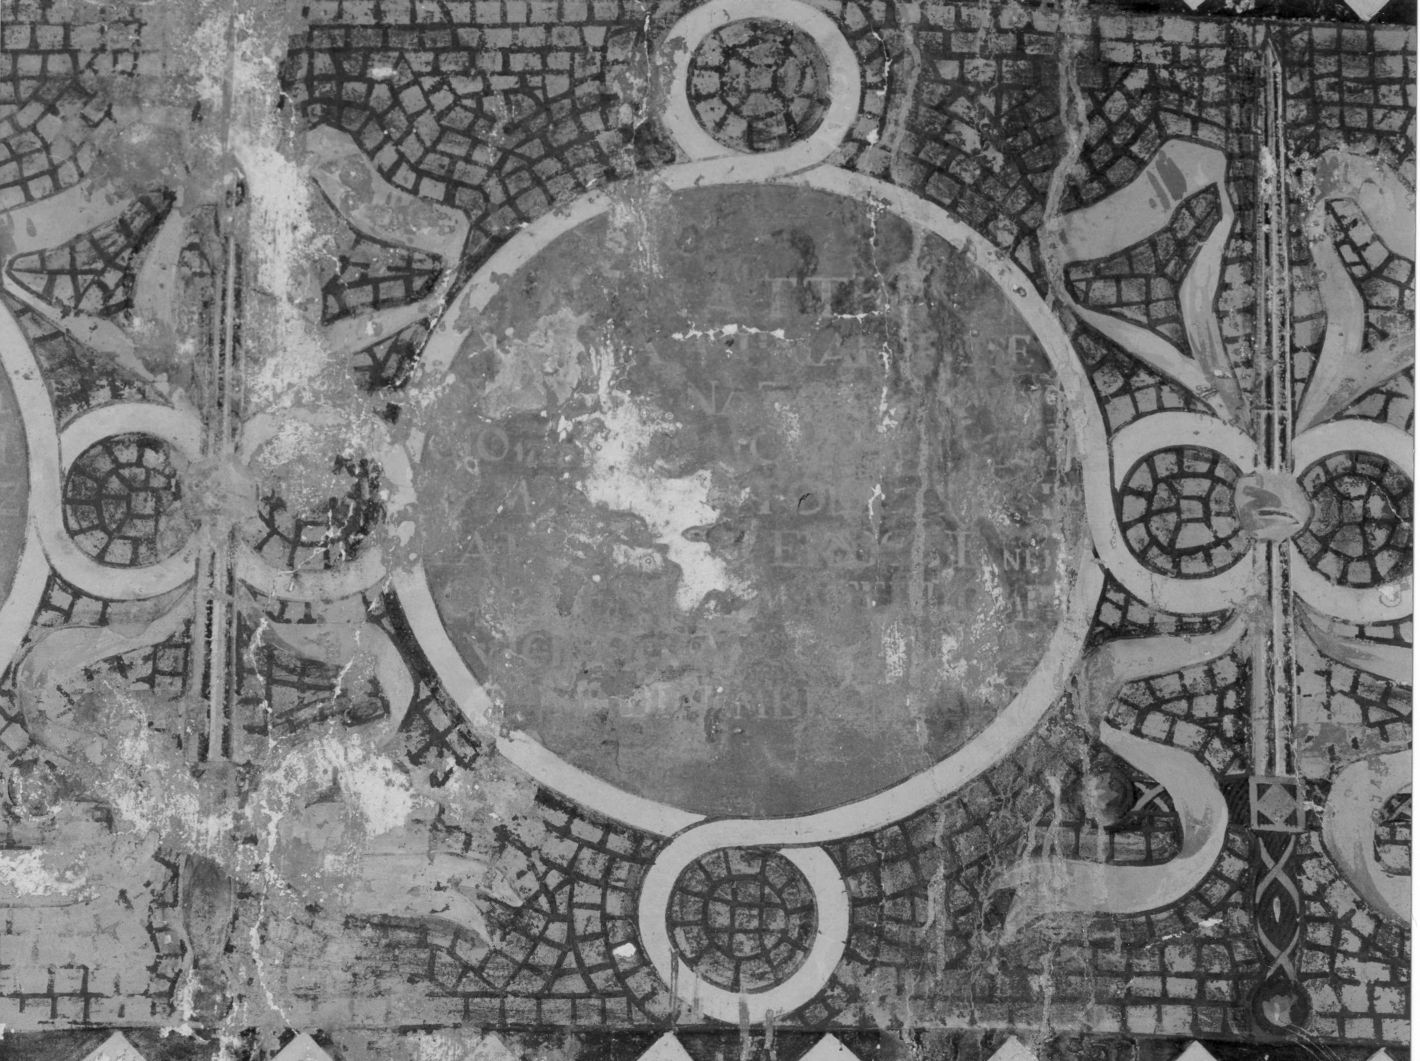 motivi decorativi a medaglioni (dipinto, elemento d'insieme) di Morgante Annibale (attribuito) (inizio sec. XX)